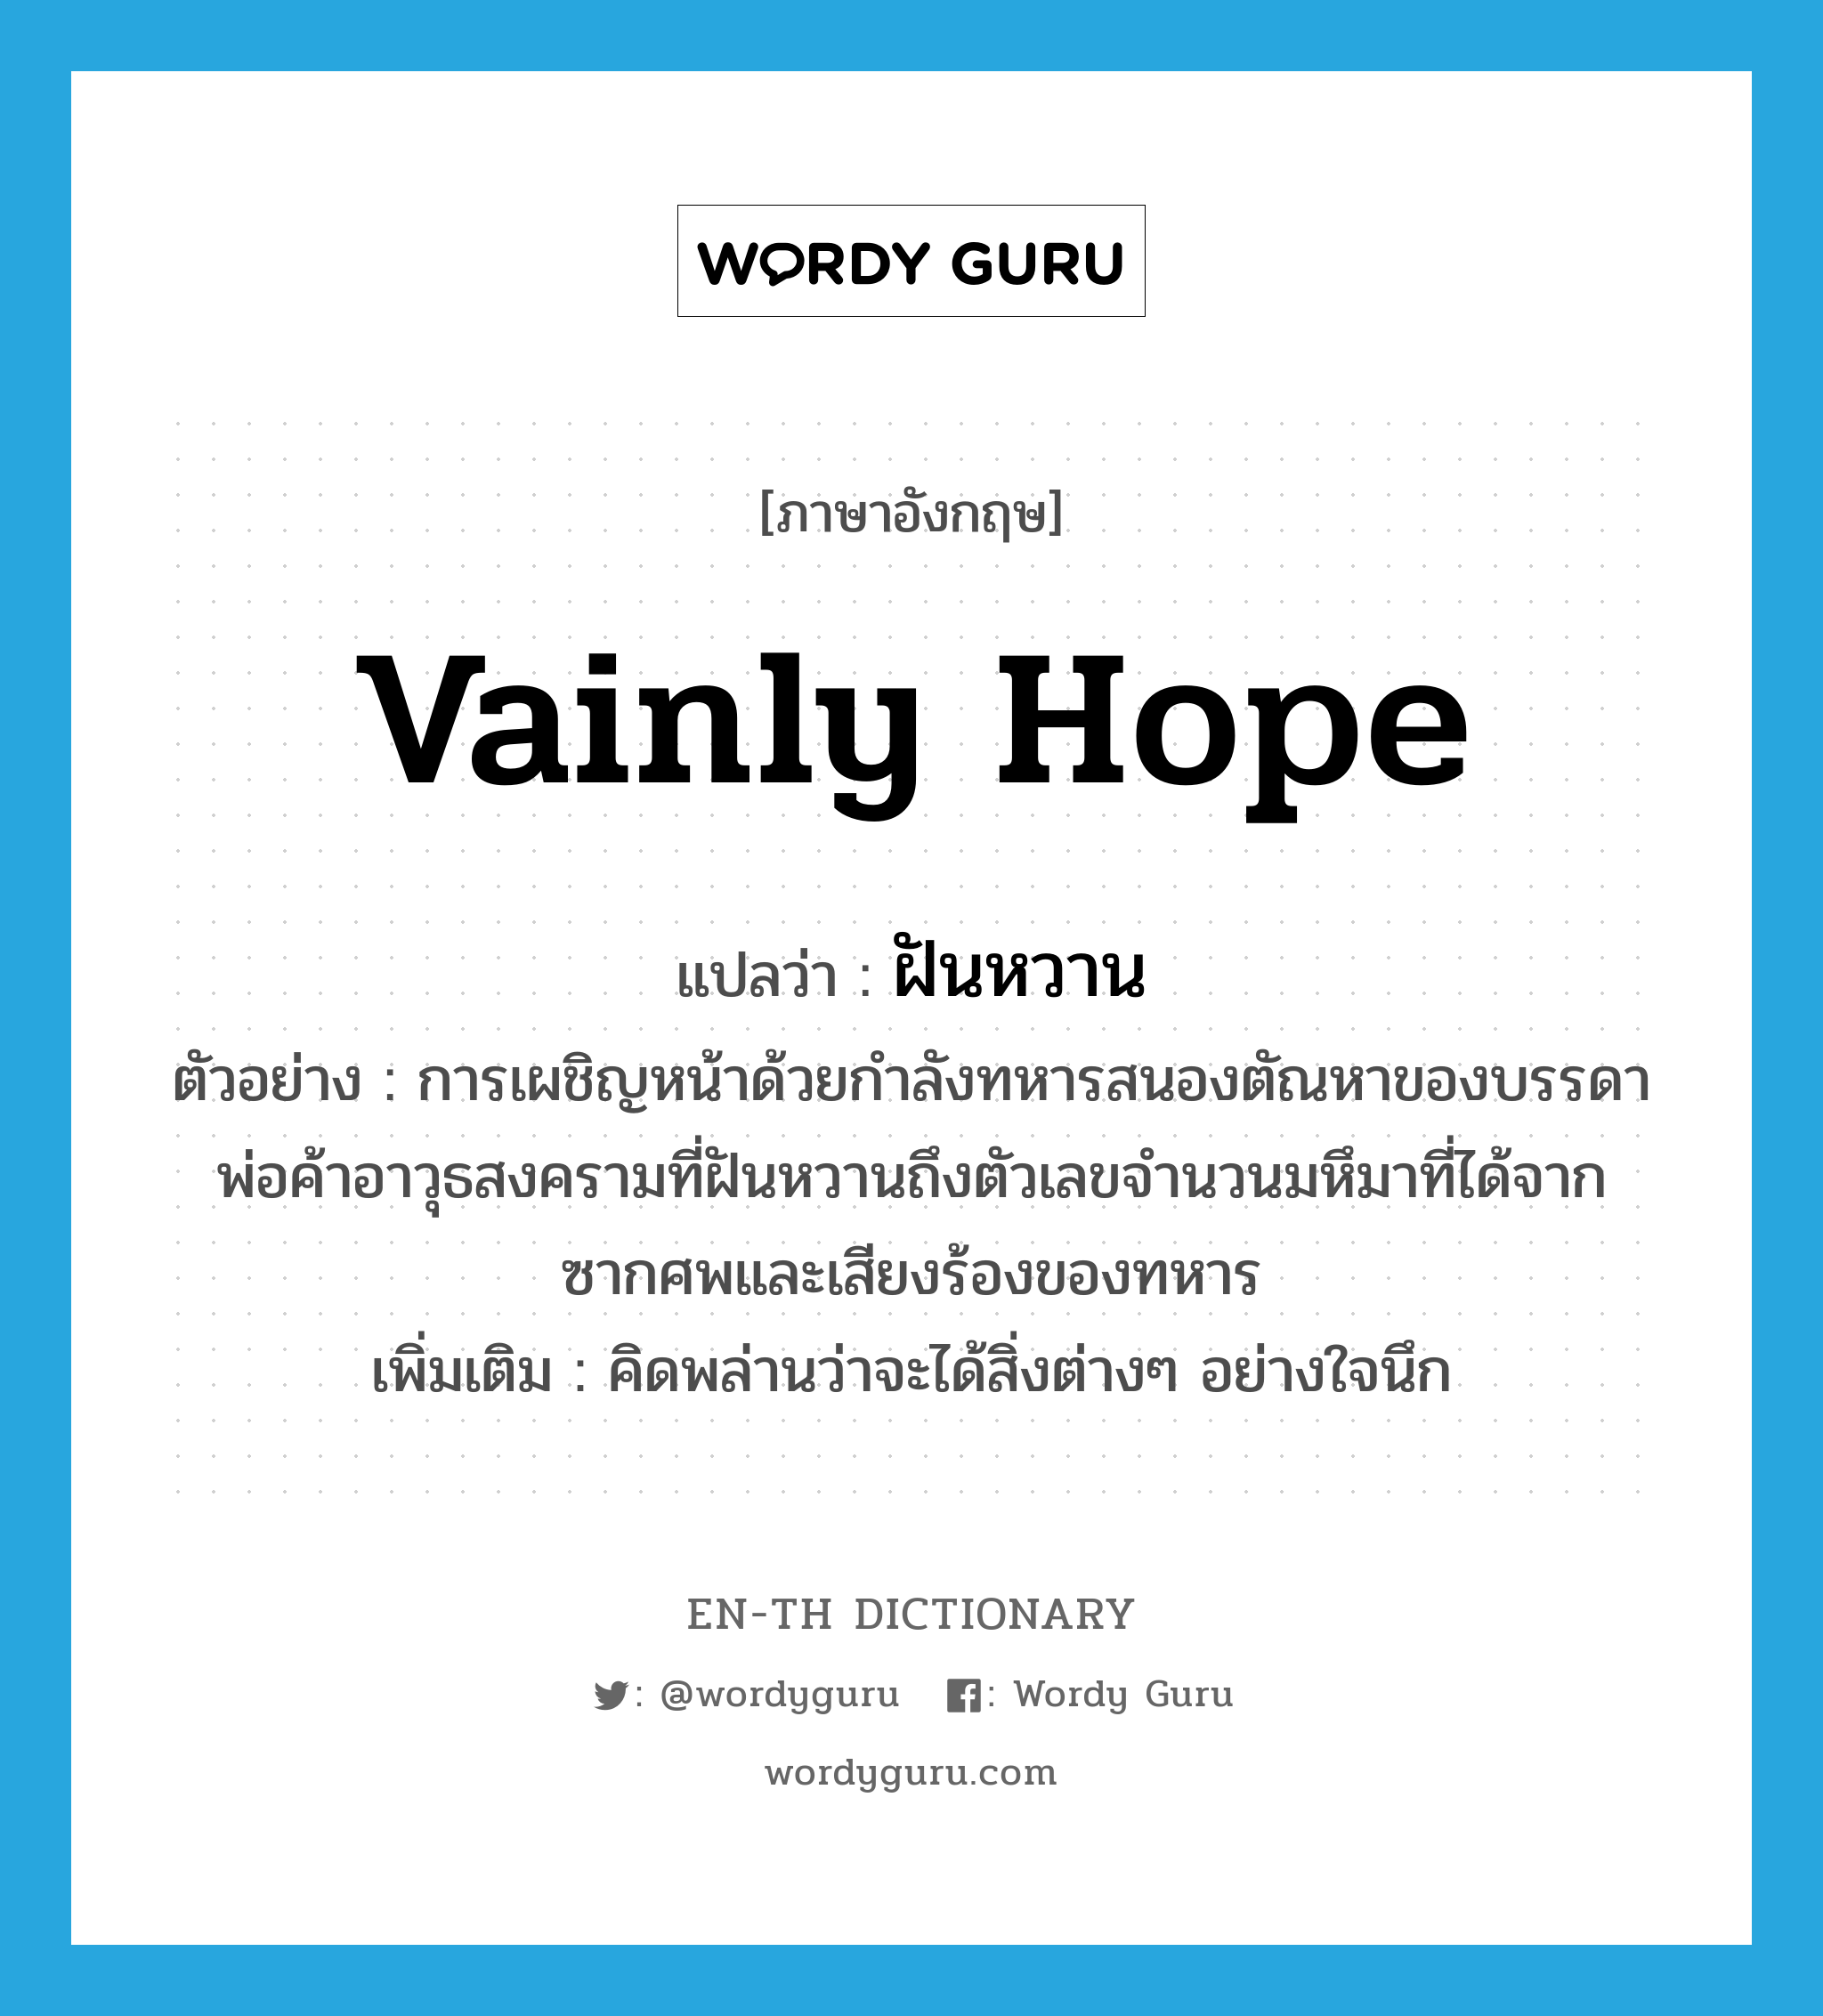 vainly hope แปลว่า?, คำศัพท์ภาษาอังกฤษ vainly hope แปลว่า ฝันหวาน ประเภท V ตัวอย่าง การเผชิญหน้าด้วยกำลังทหารสนองตัณหาของบรรดาพ่อค้าอาวุธสงครามที่ฝันหวานถึงตัวเลขจำนวนมหึมาที่ได้จากซากศพและเสียงร้องของทหาร เพิ่มเติม คิดพล่านว่าจะได้สิ่งต่างๆ อย่างใจนึก หมวด V